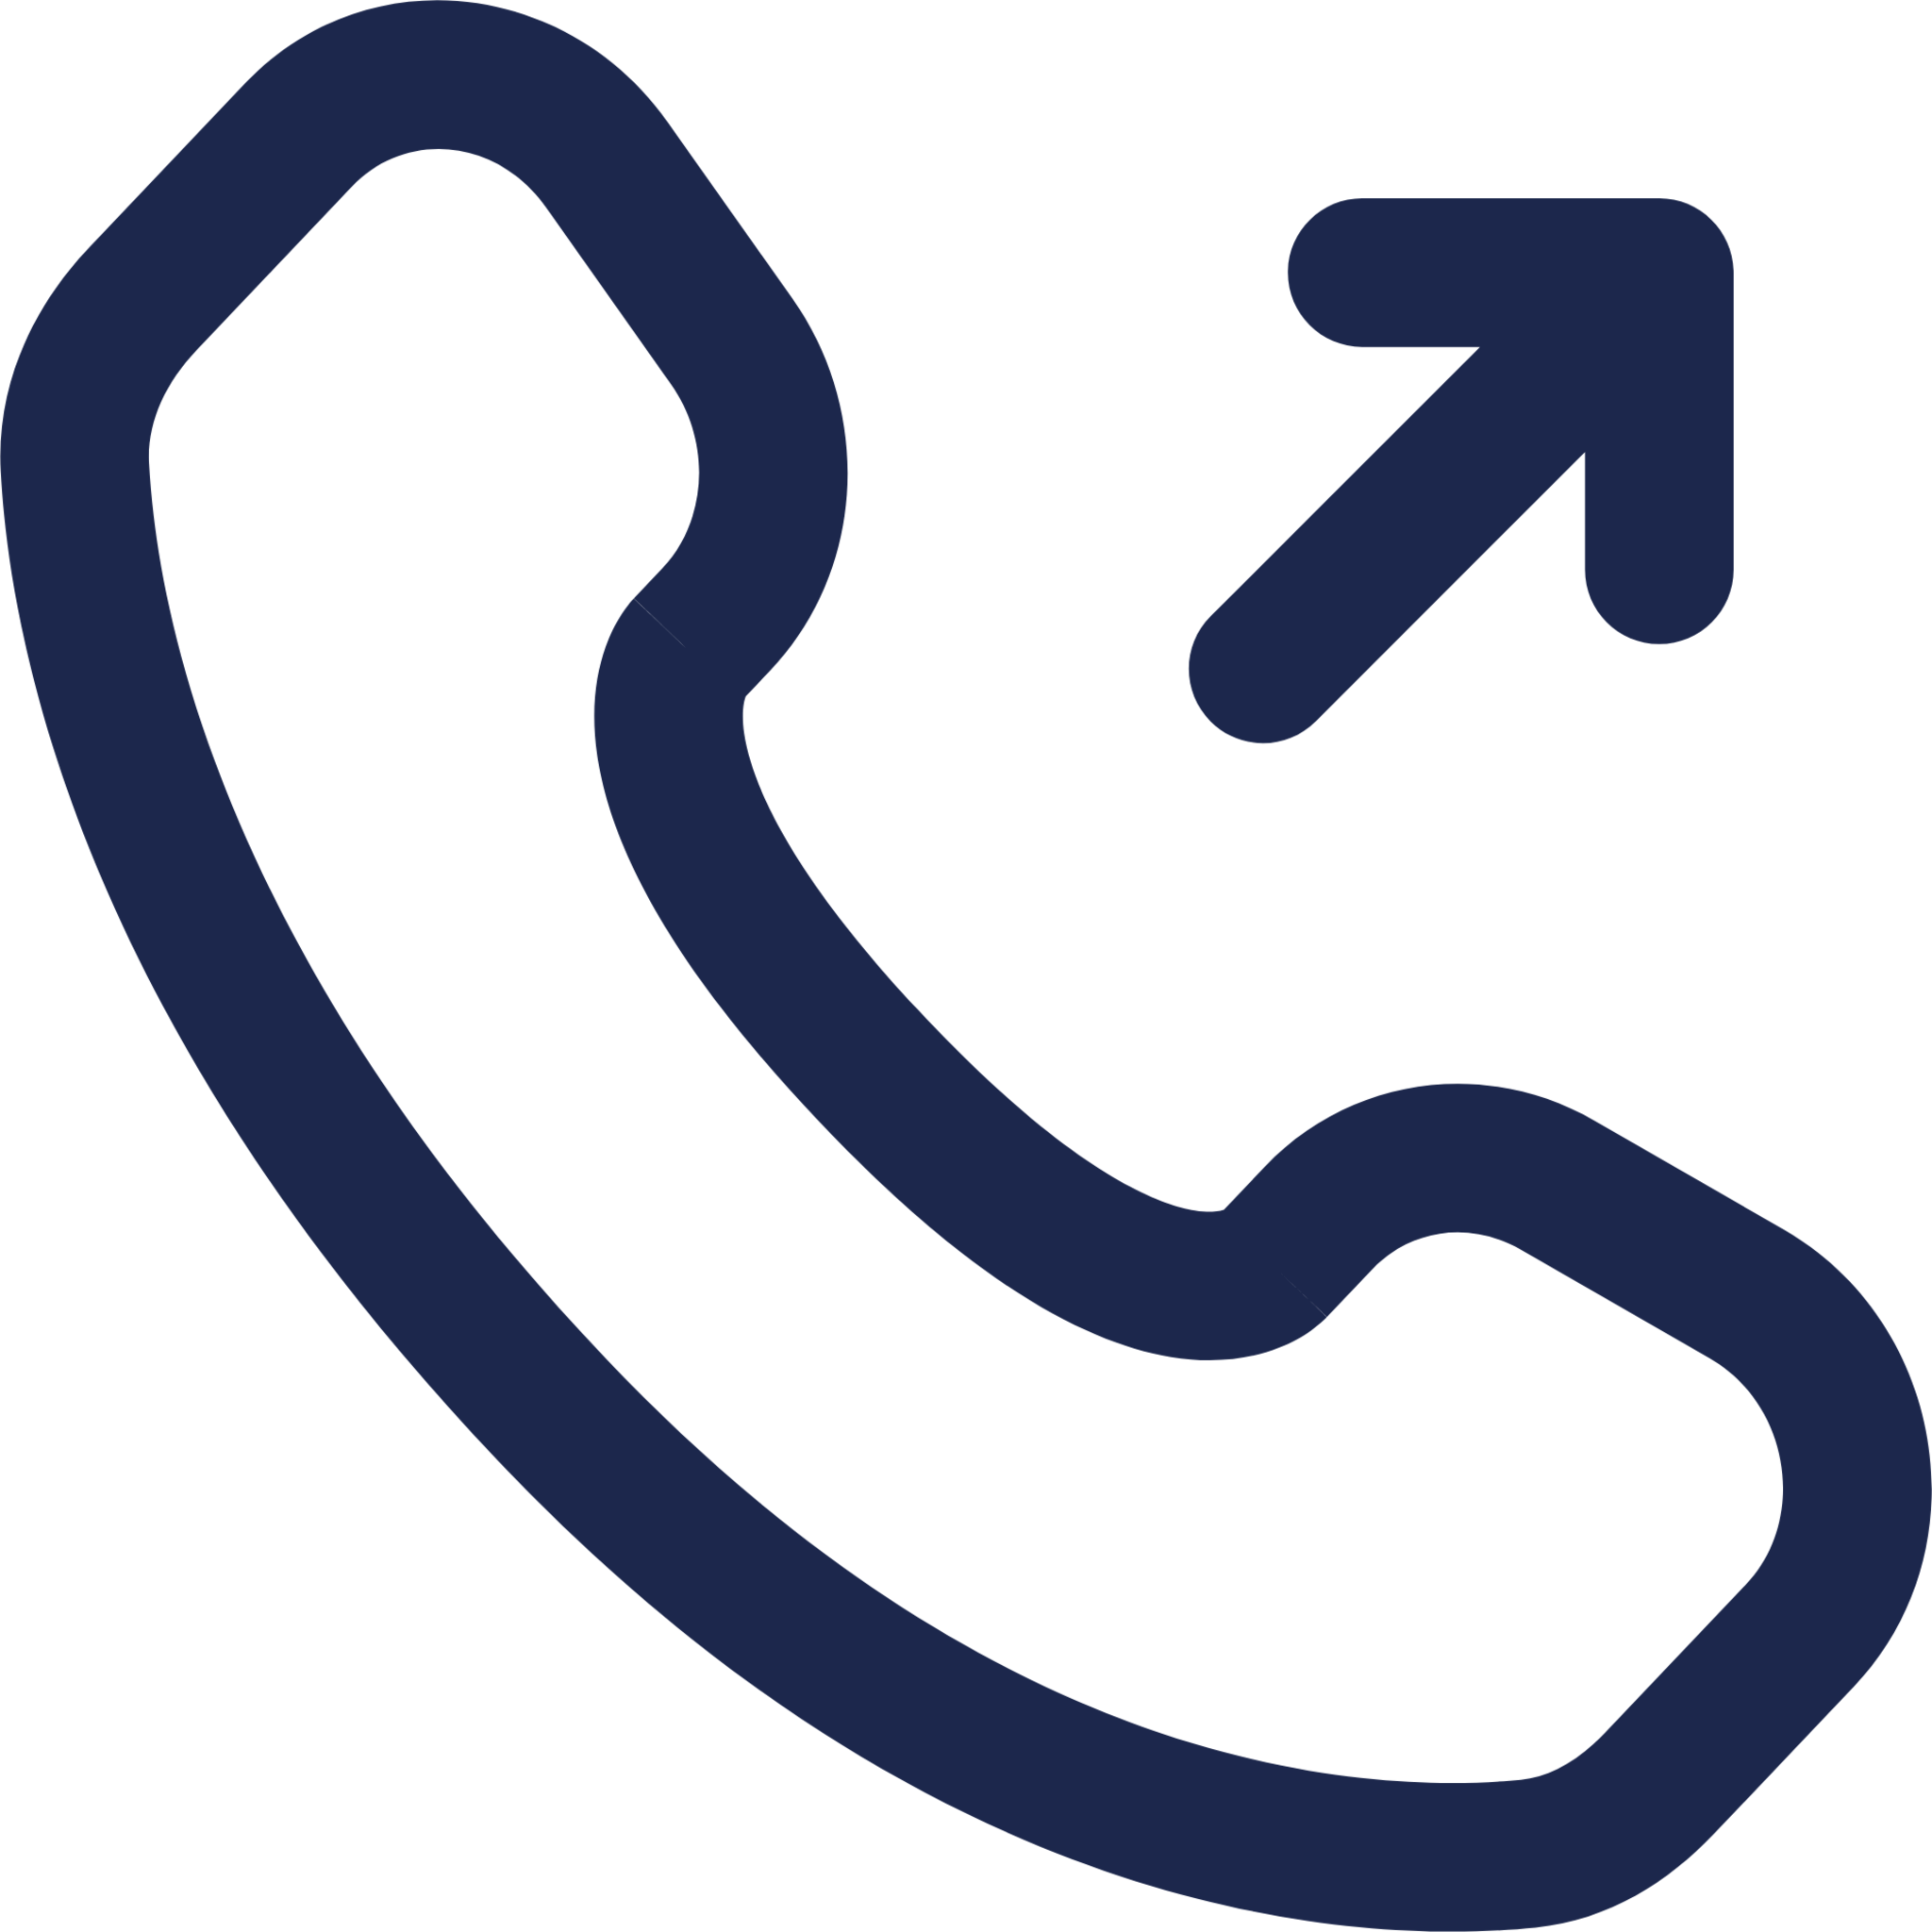 Outgoing Call icon